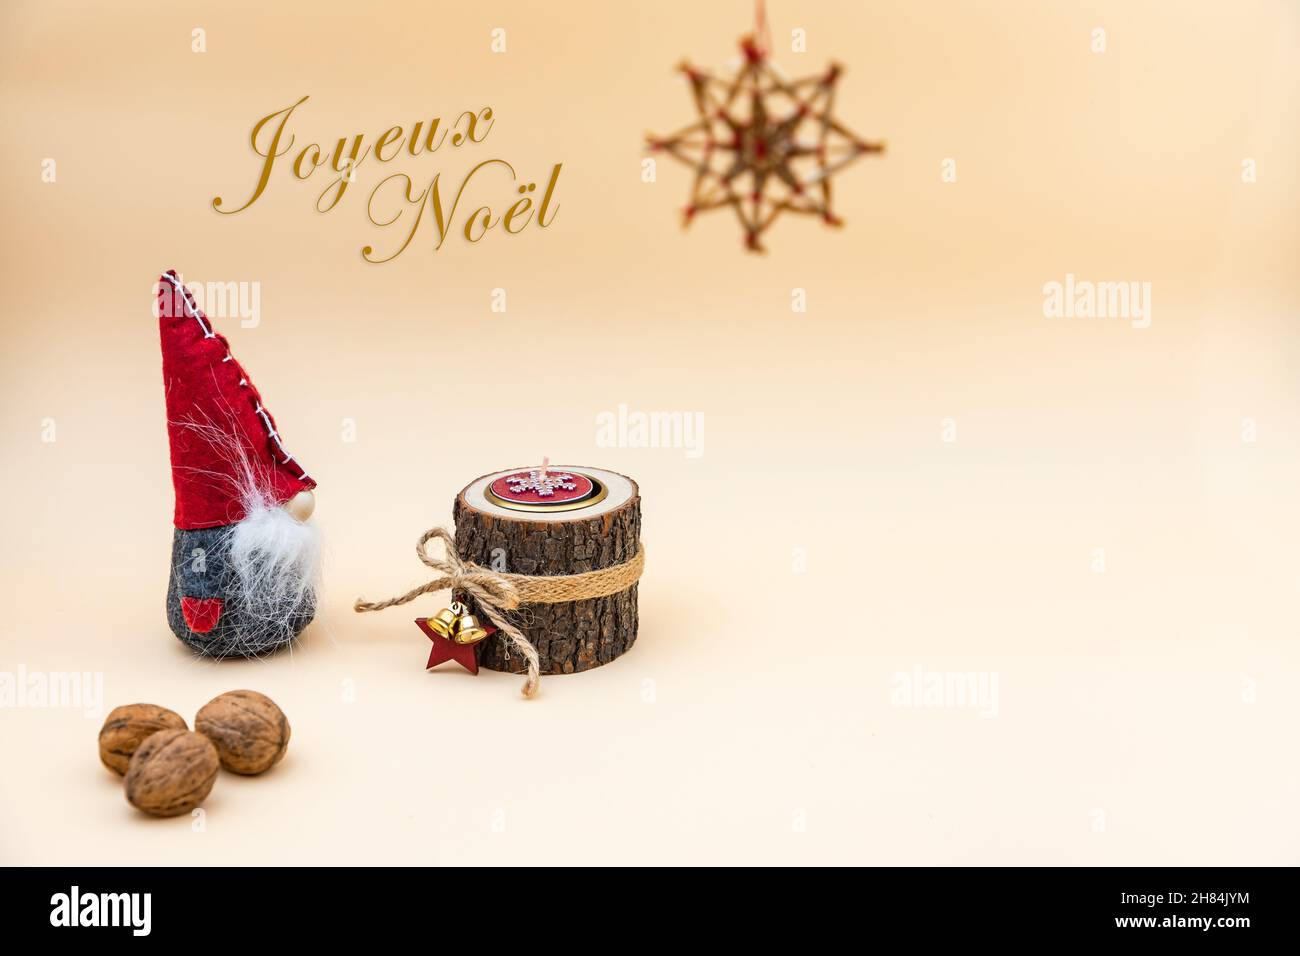 Cartolina di Natale con il testo Joyeux Noel e uno sfondo beige, noci, candela di legno e un divertente gnome Foto Stock